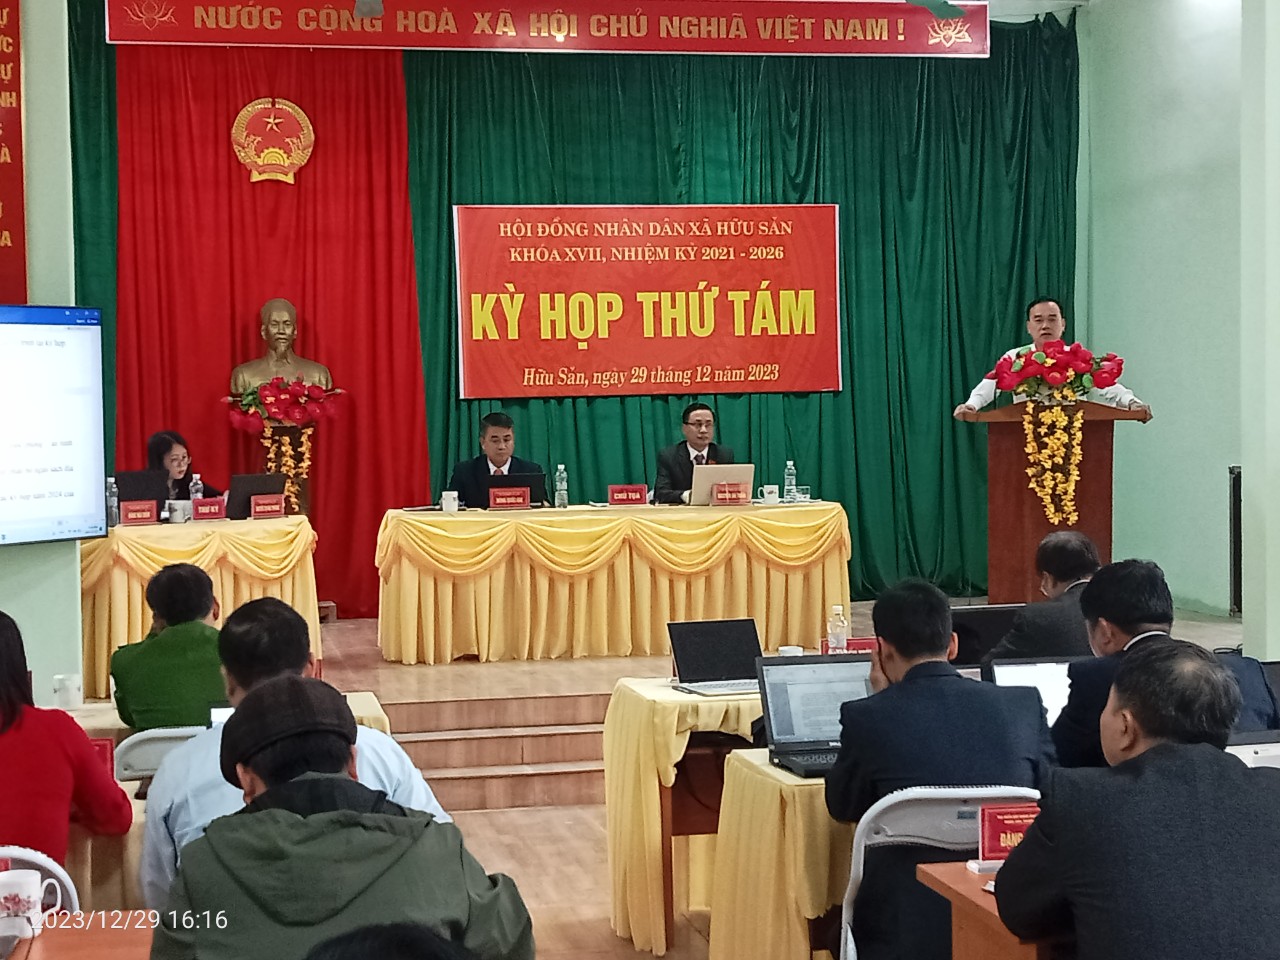 Hội đồng nhan dân xã Hữu Sản tổ chức kỳ họp thứ Tám HĐND xã nhiệm kỳ 2021 – 2026.